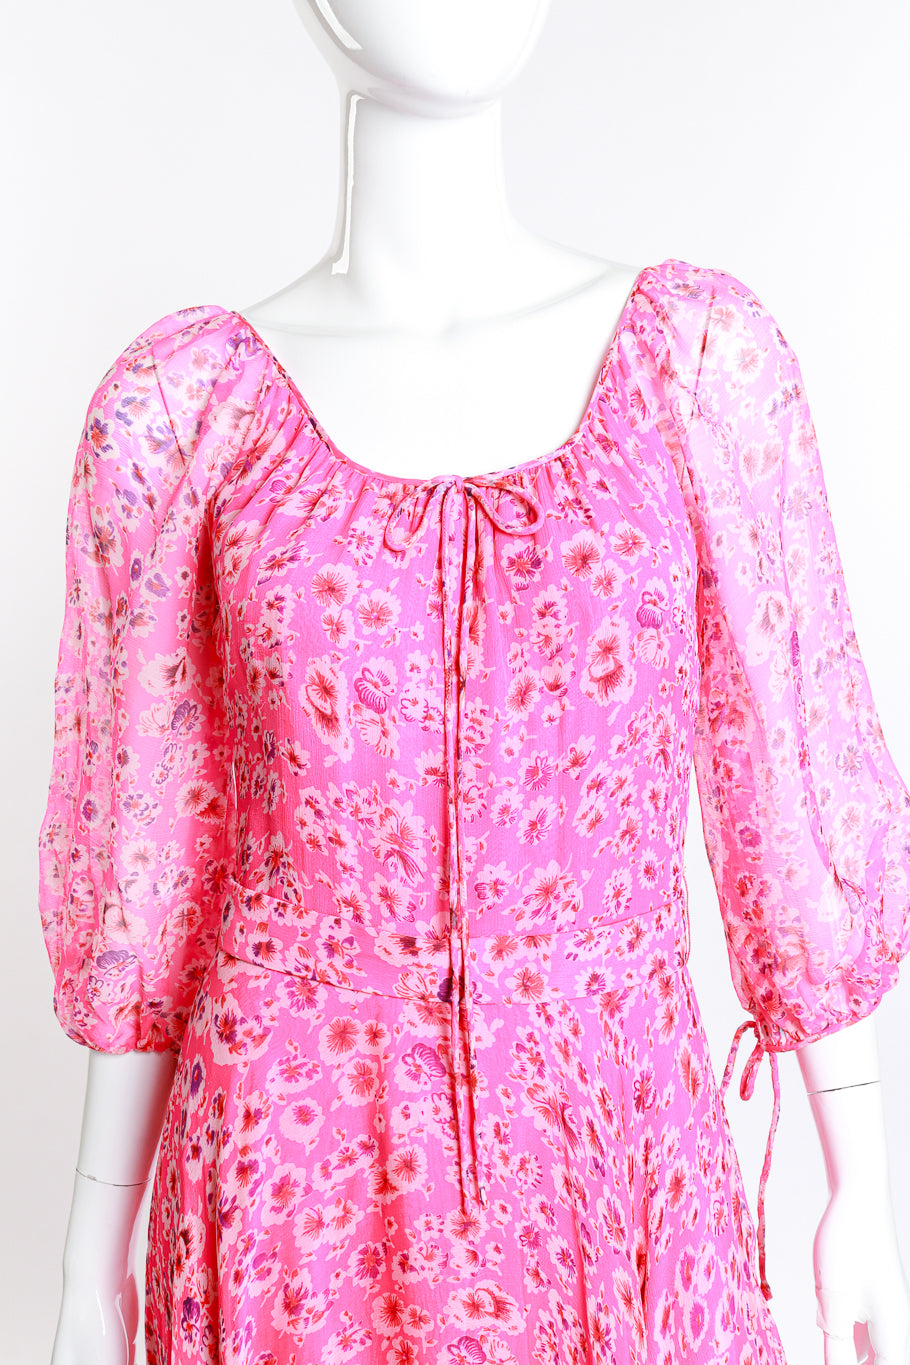 Vintage Saz Boutique Floral Chiffon Maxi Dress front detail on mannequin @RECESS LA